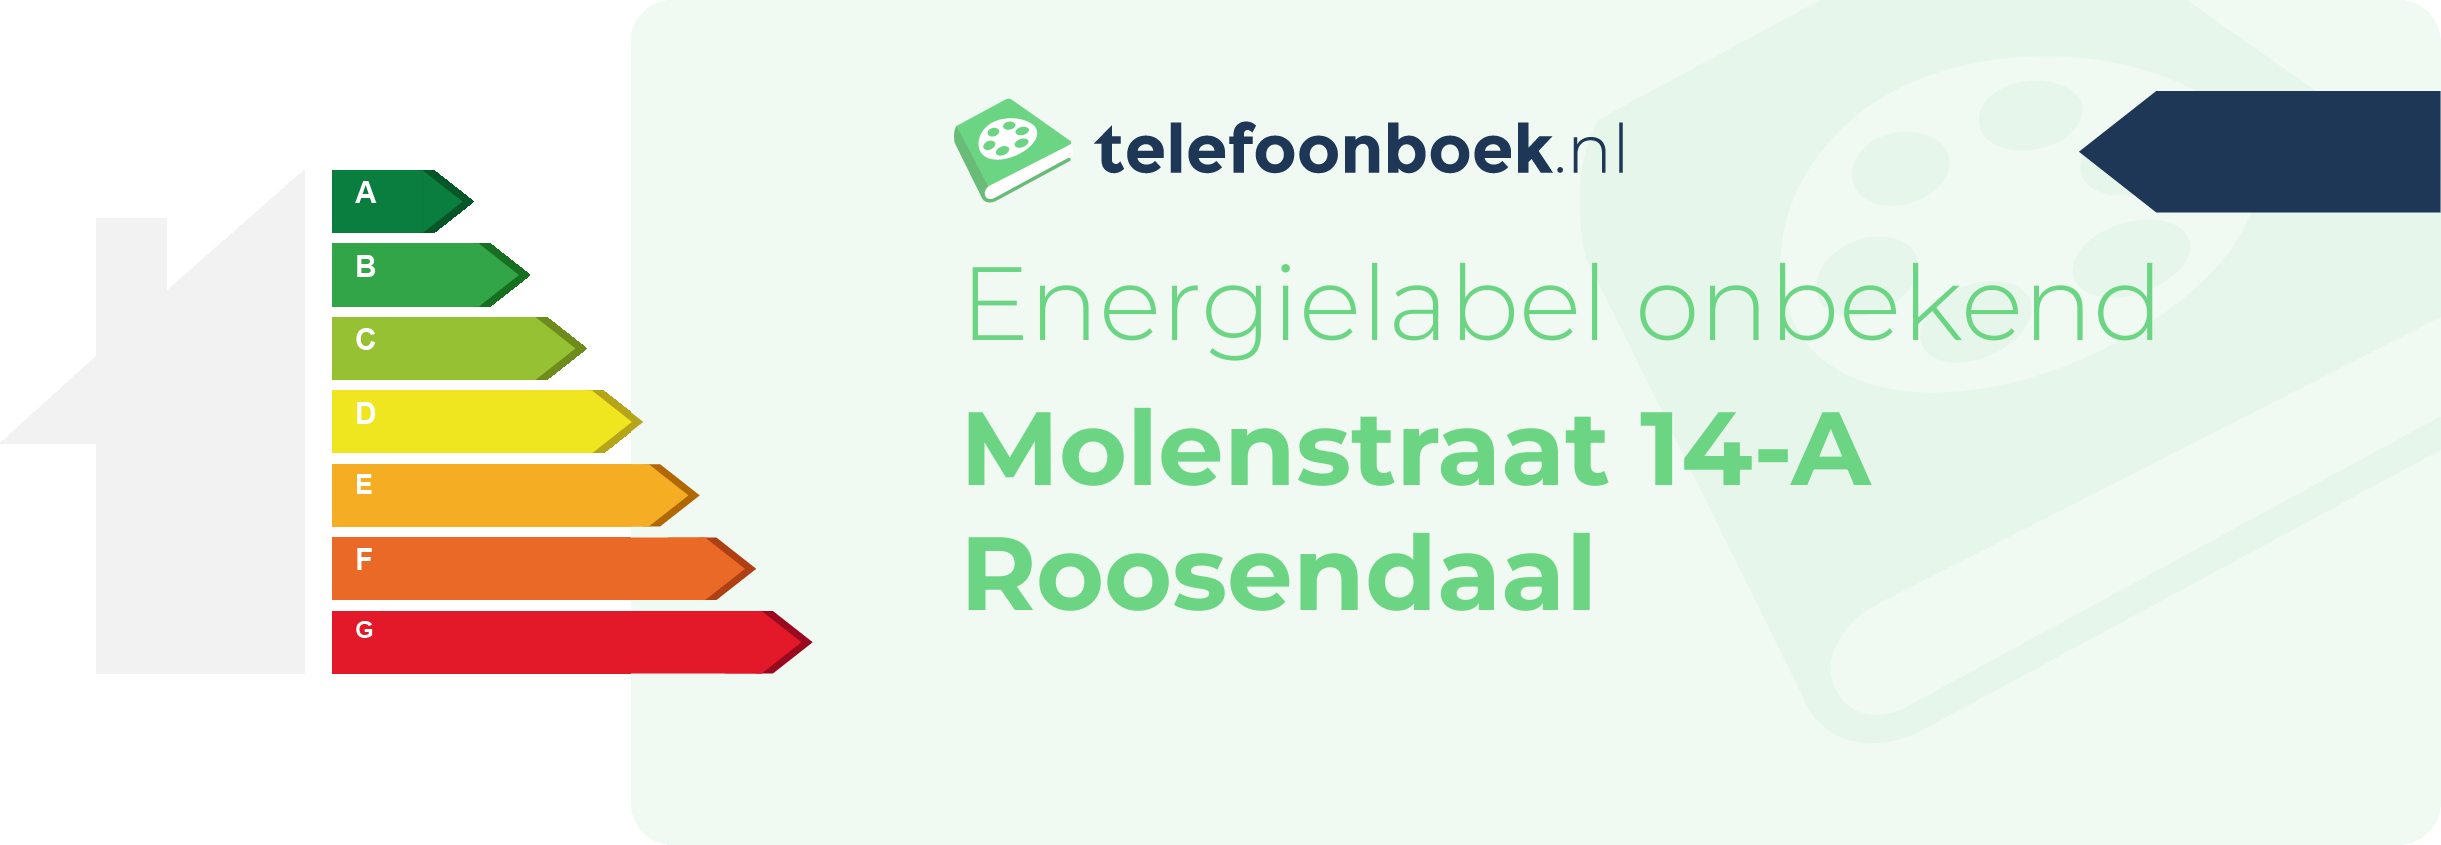 Energielabel Molenstraat 14-A Roosendaal